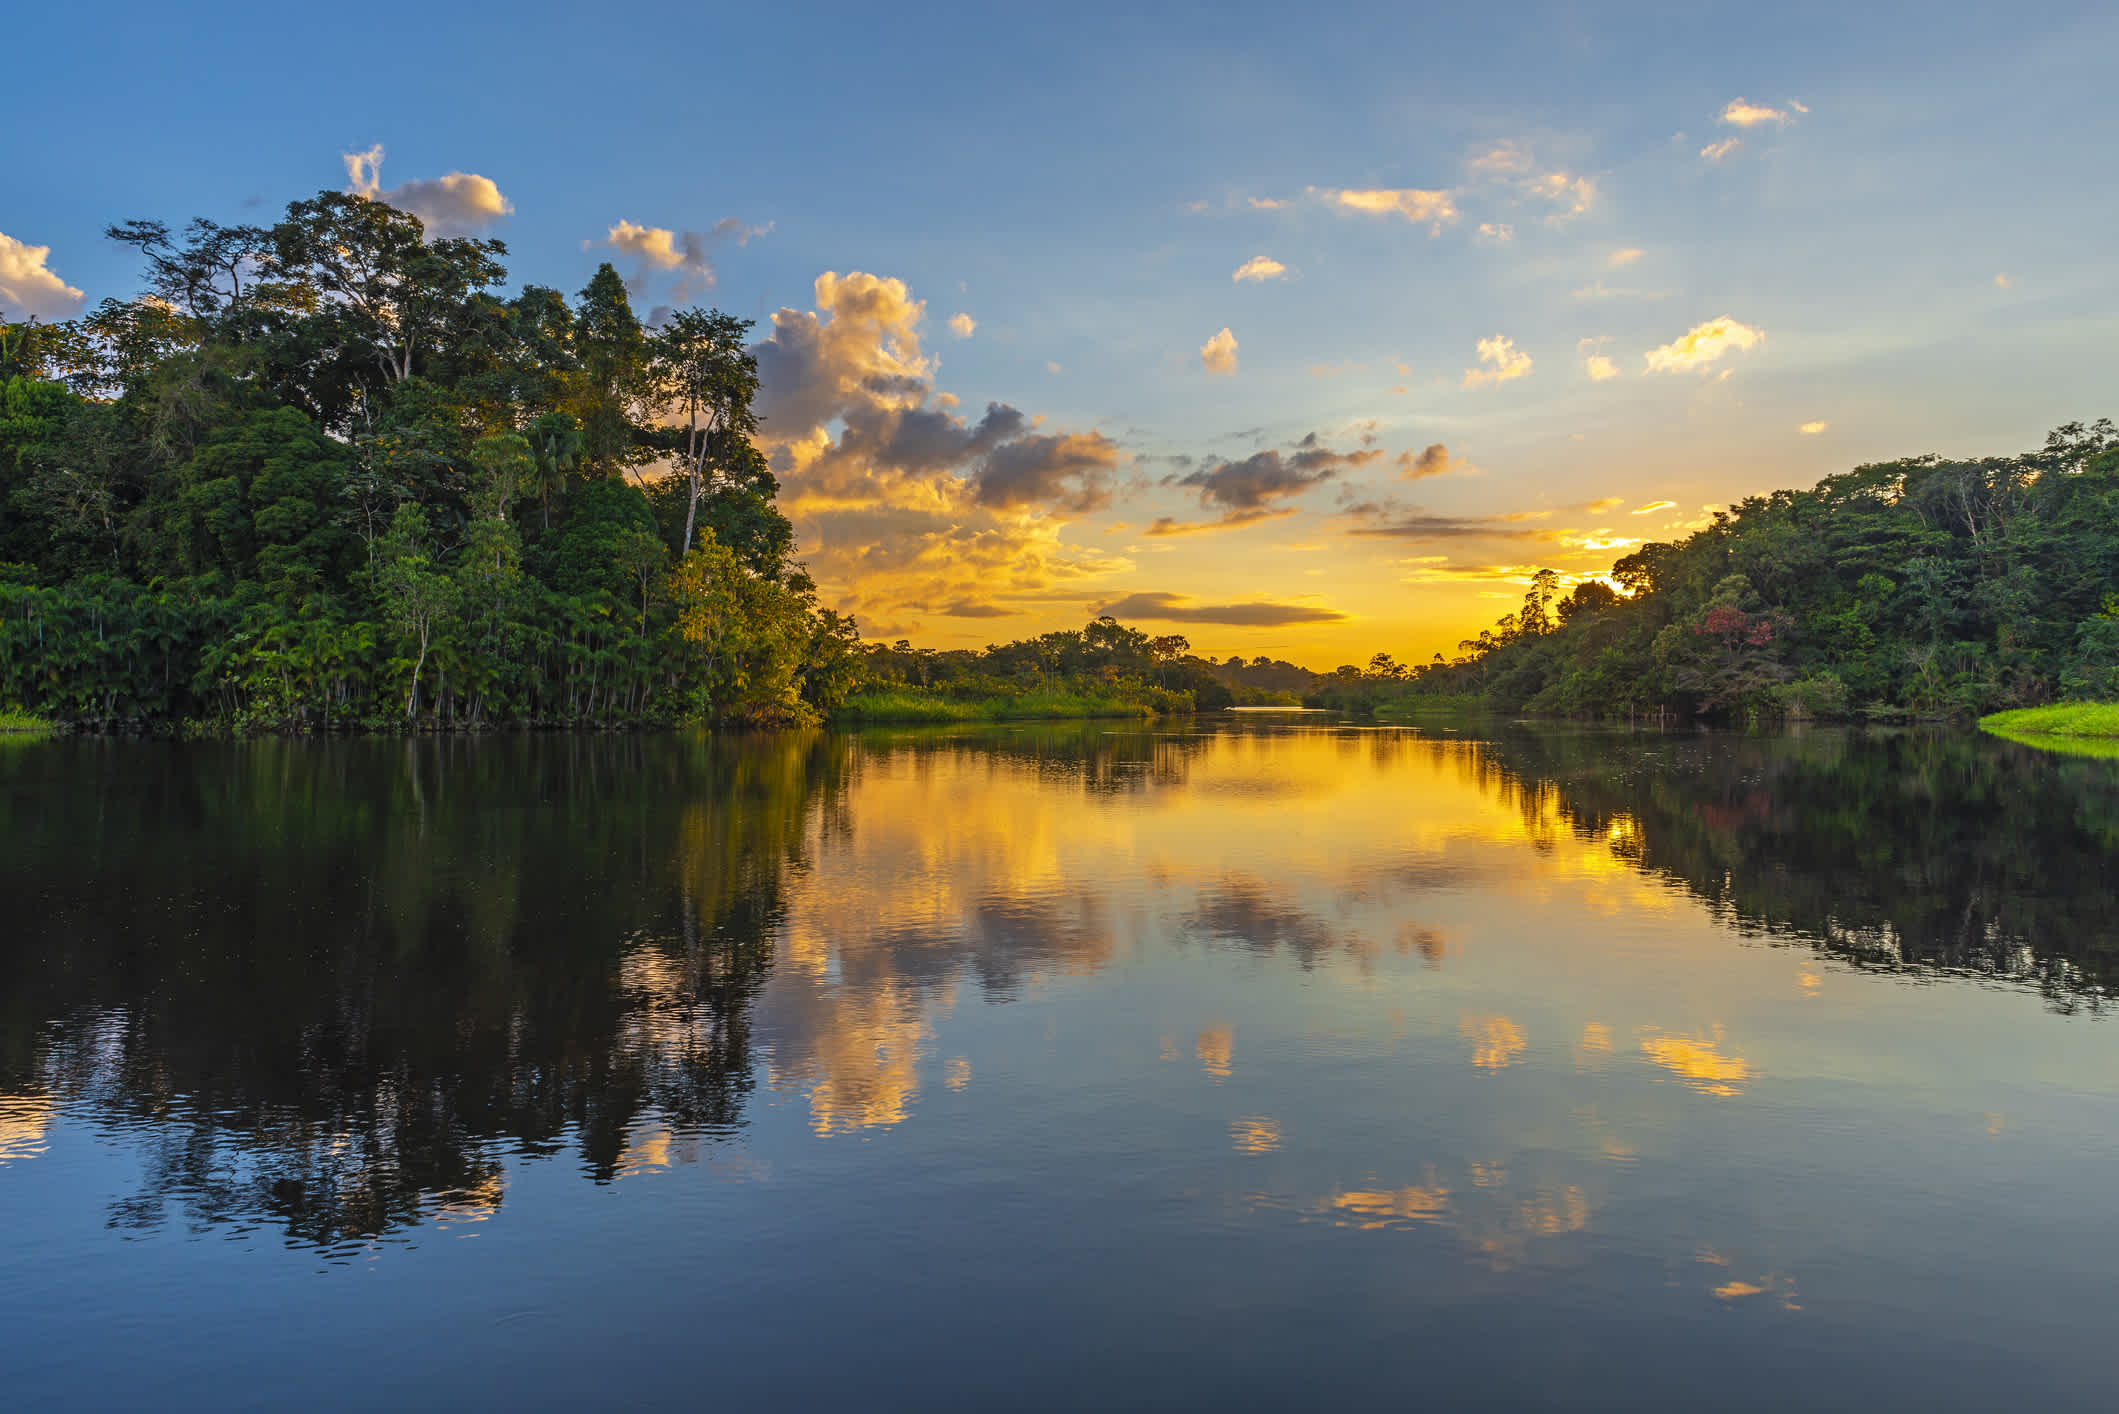 Coucher de soleil sur une lagune du bassin de la forêt amazonienne en Colombie
